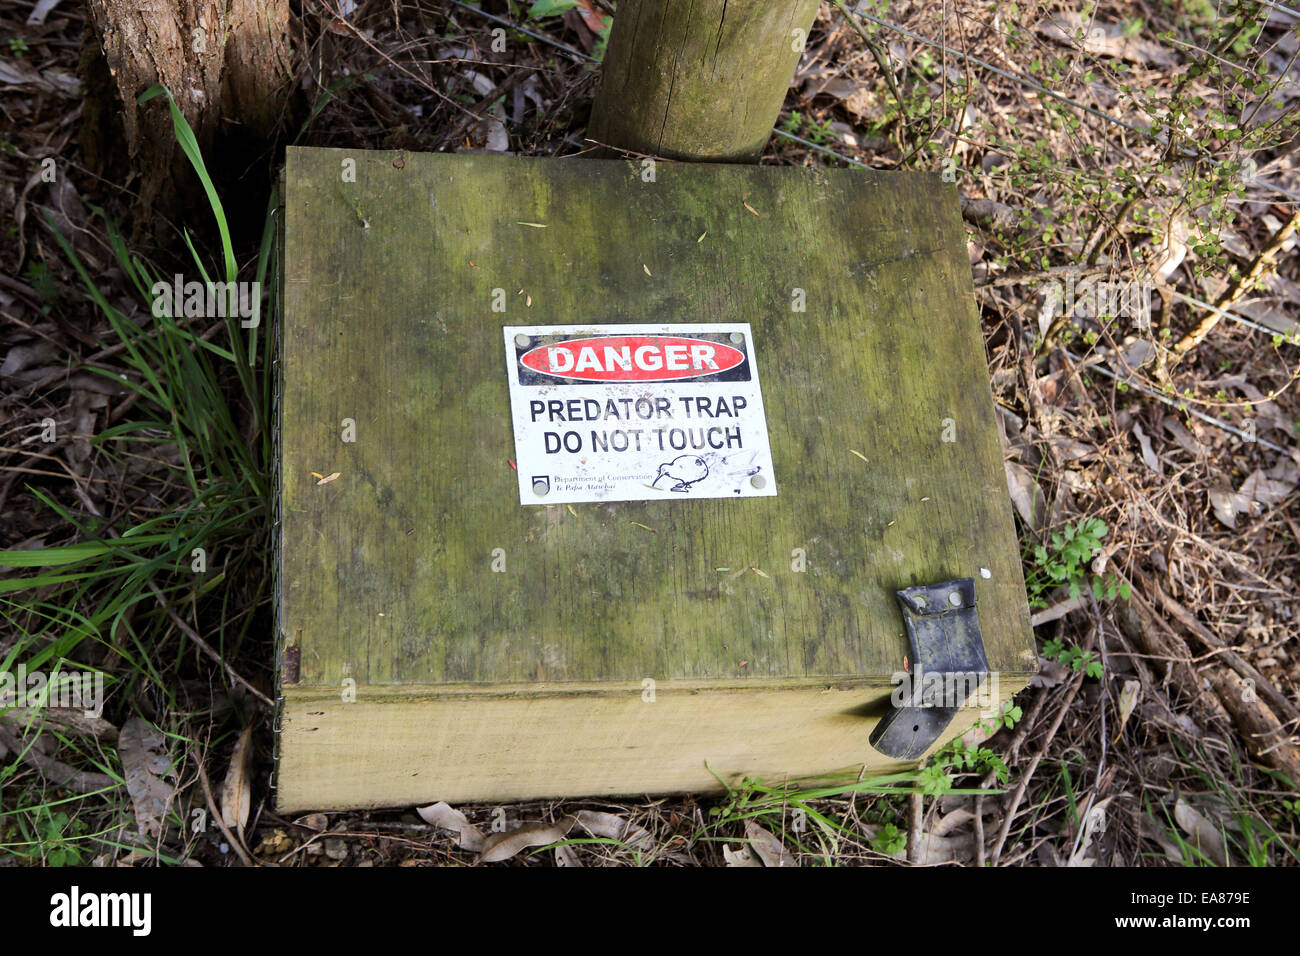 Hölzerne Raubtier Falle box in Neuseeland Wald, Kiwi und andere  einheimische Vögel zu schützen Stockfotografie - Alamy